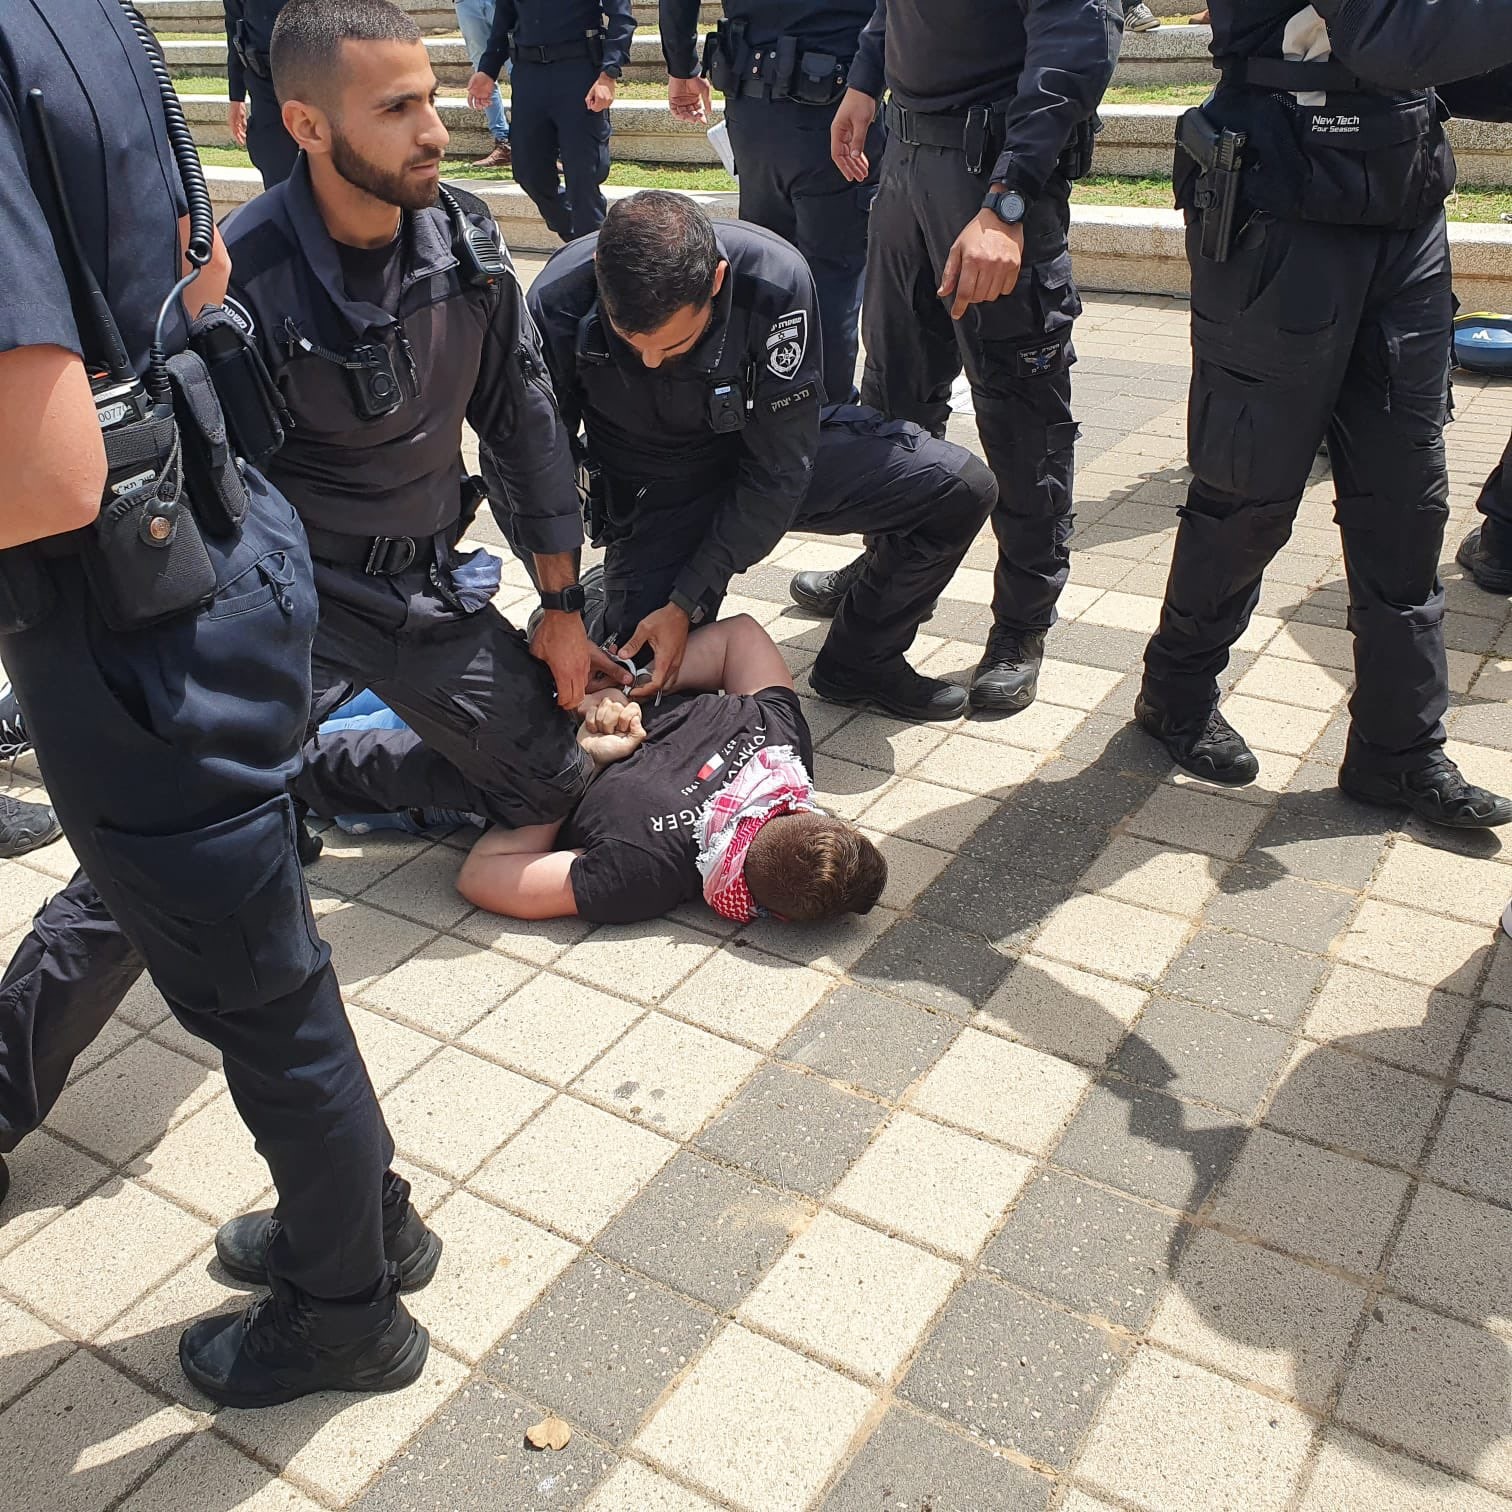 נמשך מסע הדיכוי המשטרתי: שלושה סטודנטים ערבים נעצרו בטקס יום הנכבה באונ’ ת”א